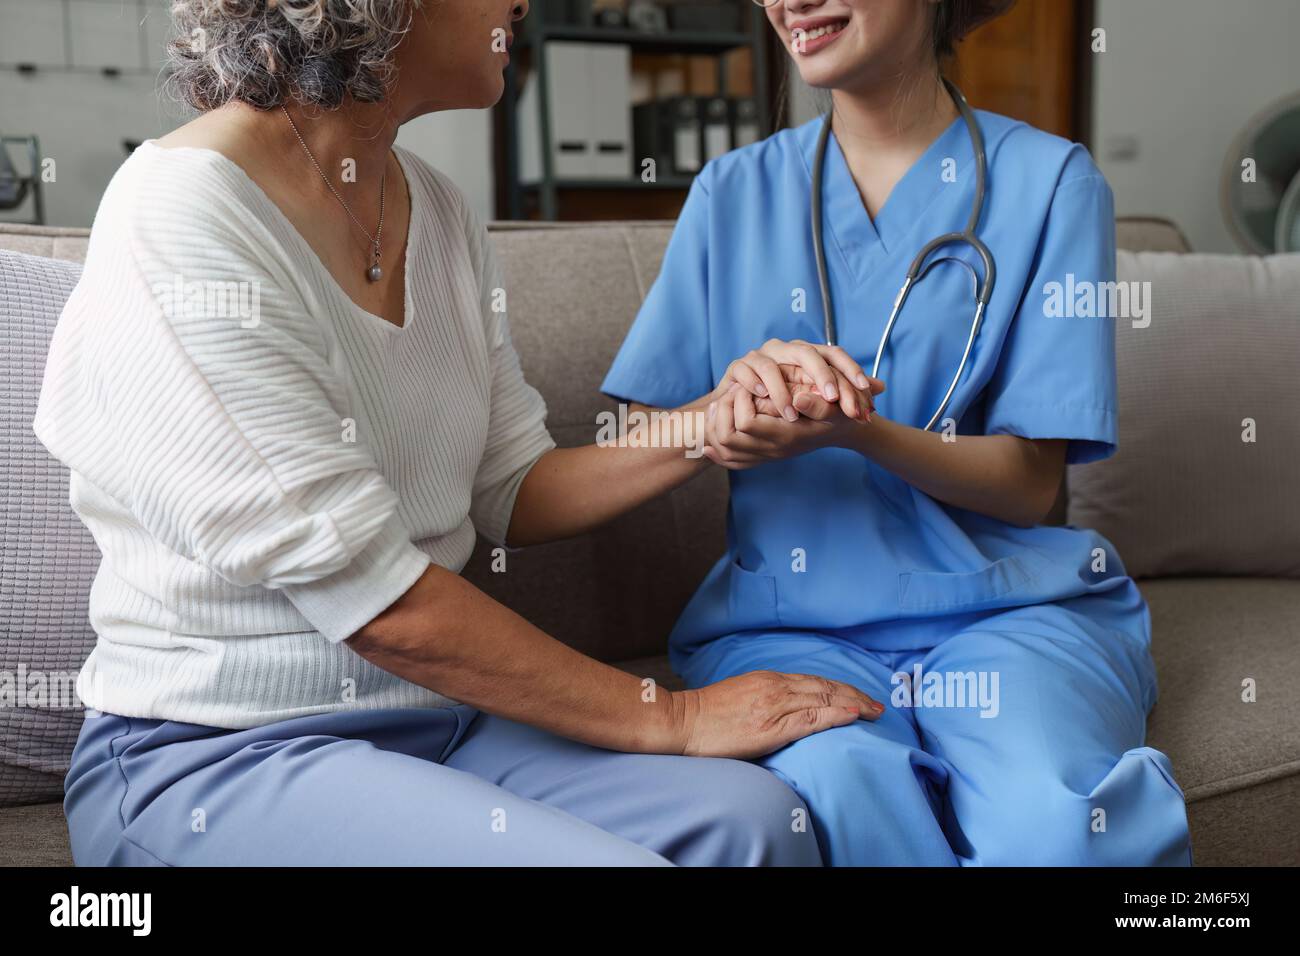 Jeune infirmière asiatique prenant soin des patients ou des personnes âgées à la maison. concept de soins infirmiers à domicile Banque D'Images